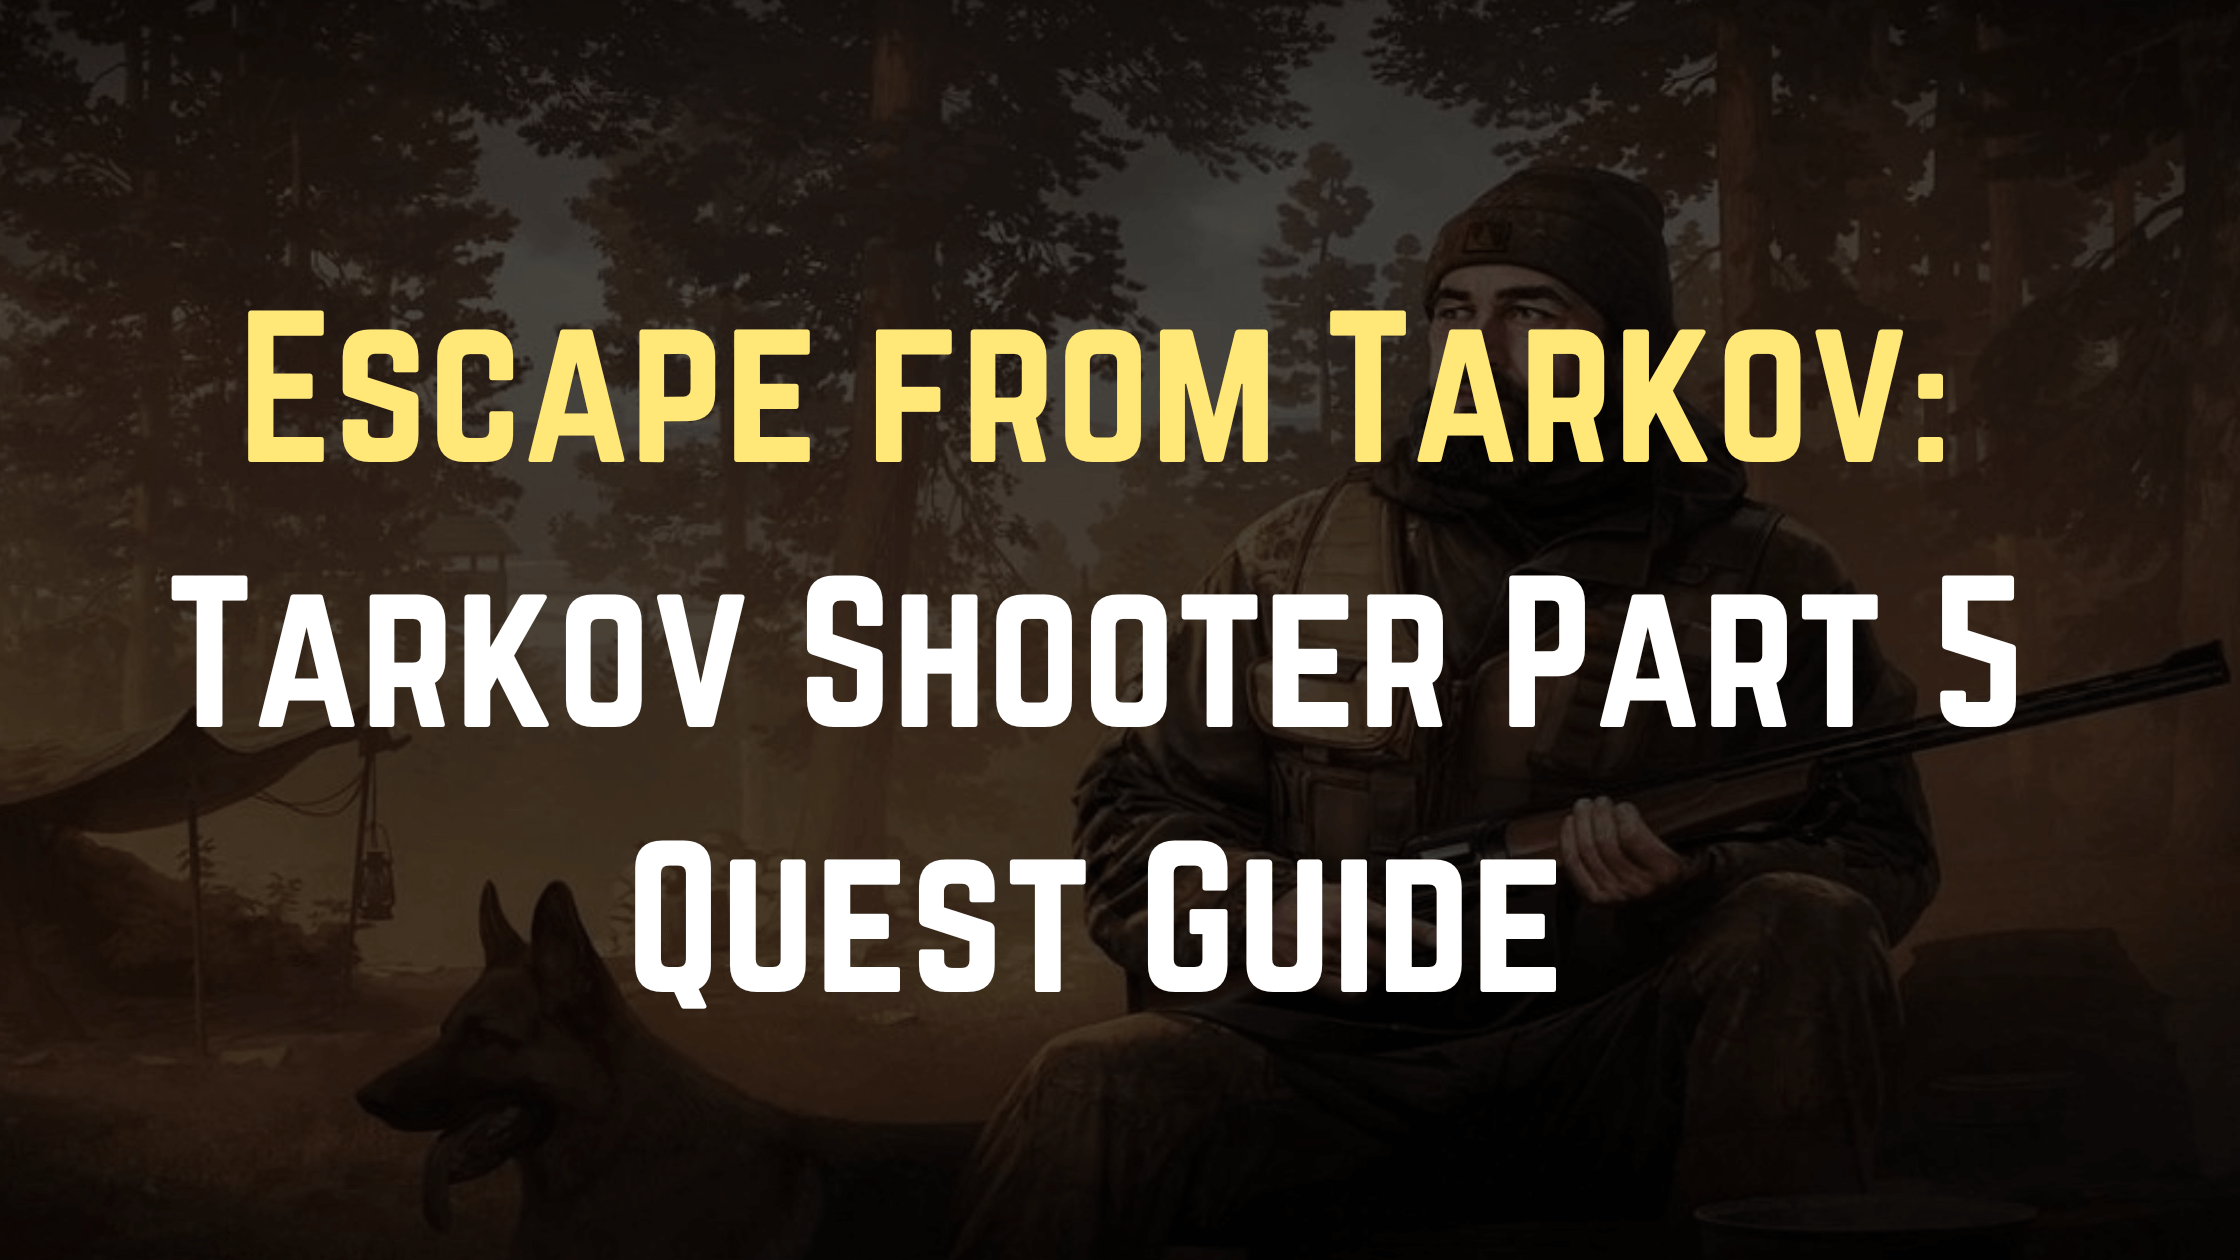 Tarkov Shooter Part 5